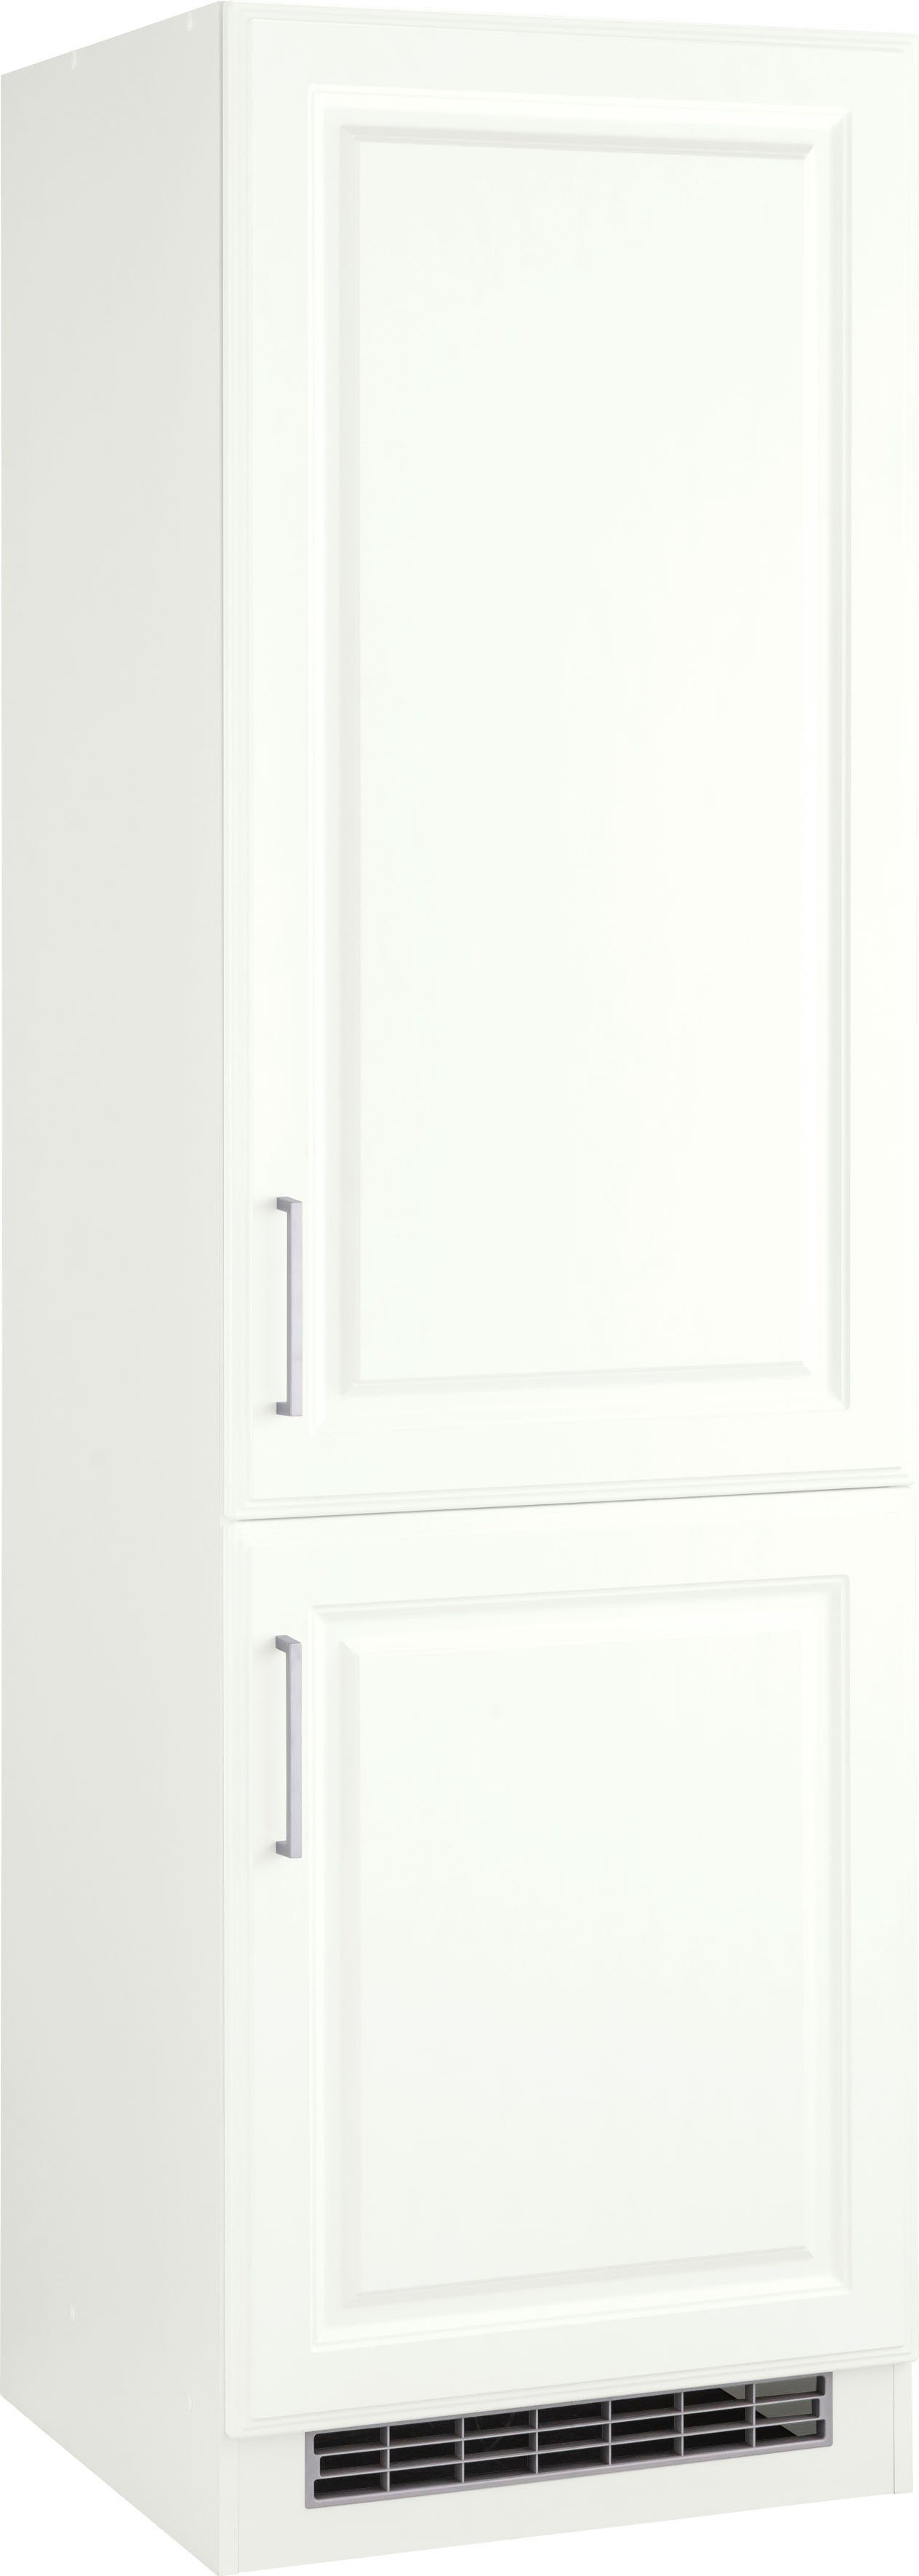 HELD MÖBEL Kühlumbauschrank Stockholm 60 cm breit, hochwertige MDF-Fronten mit Fräsung weiß Matt | weiß | Umbauschränke